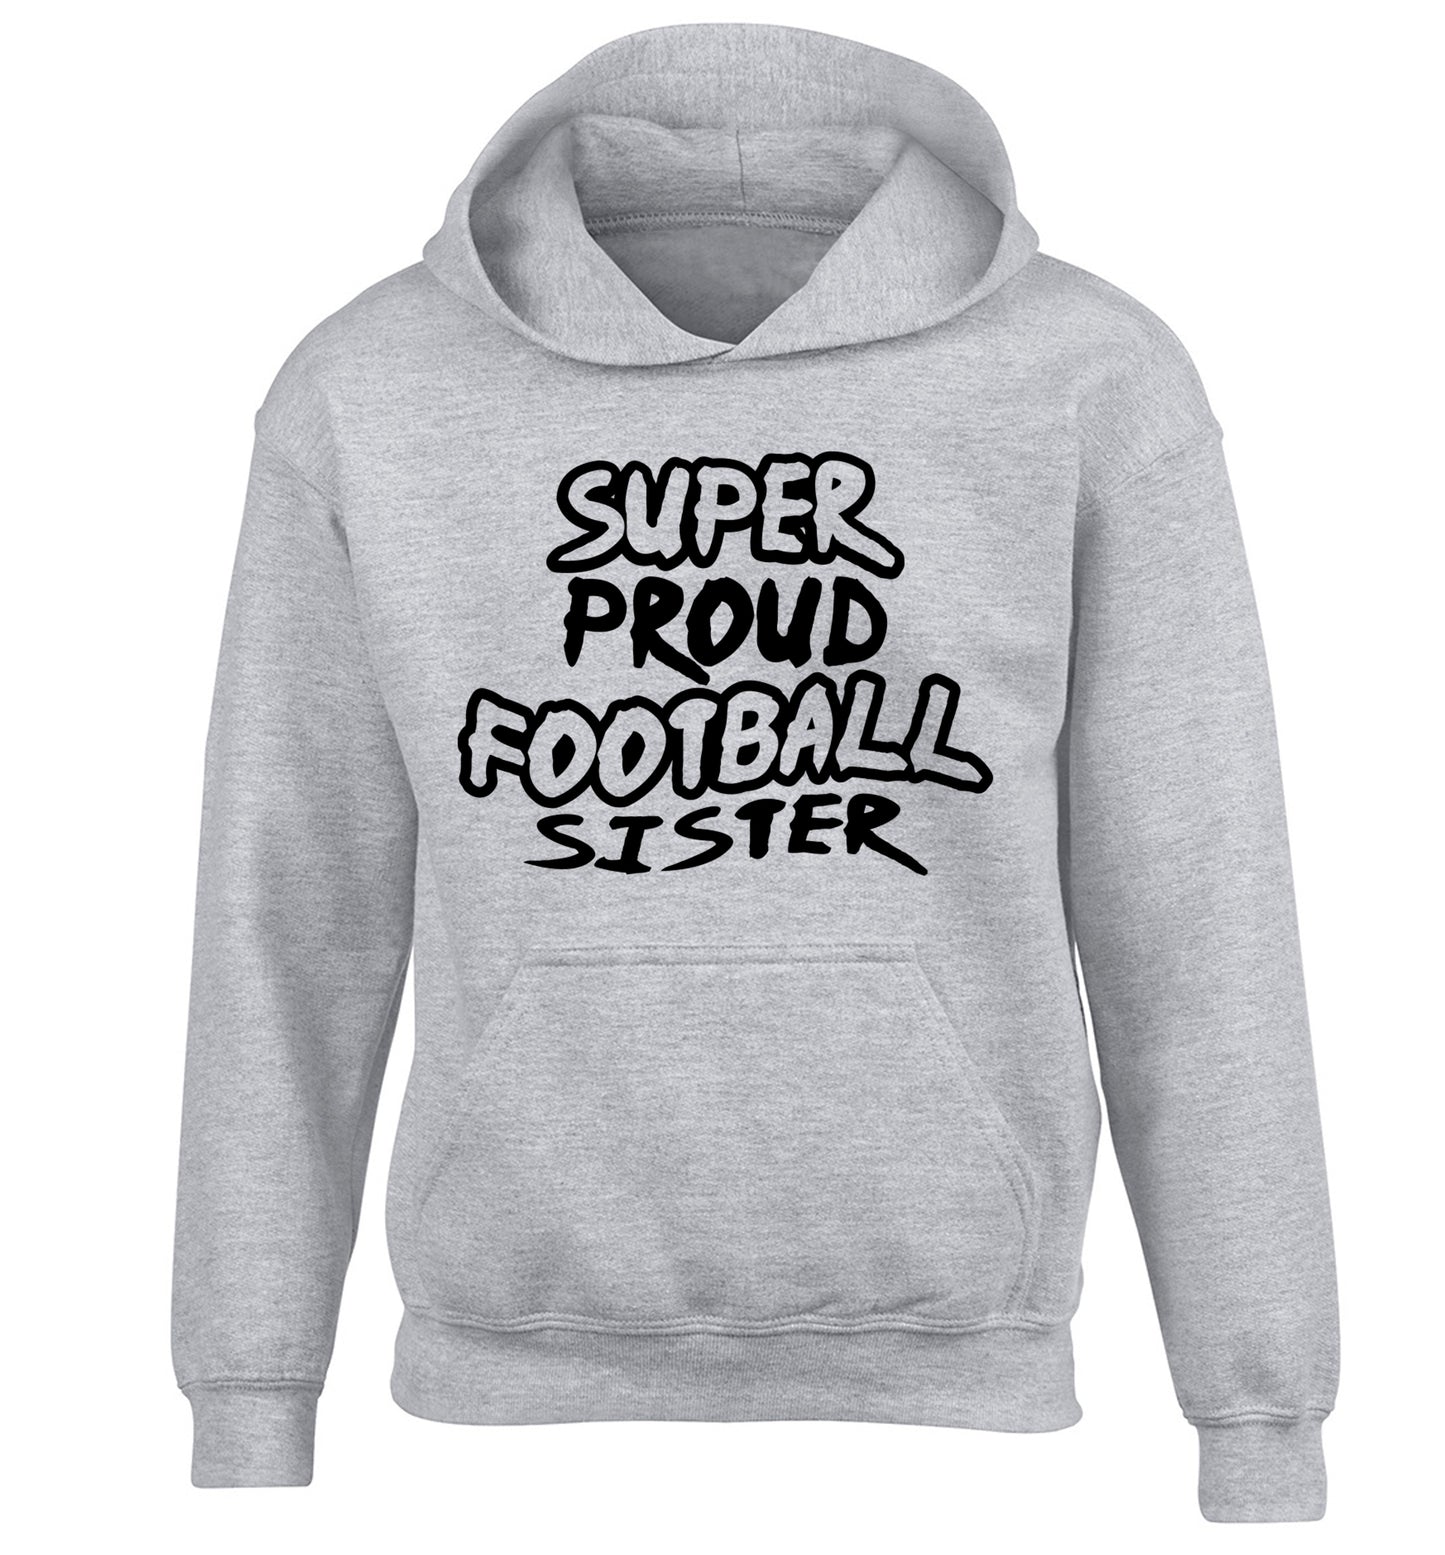 Super proud football sister children's grey hoodie 12-14 Years